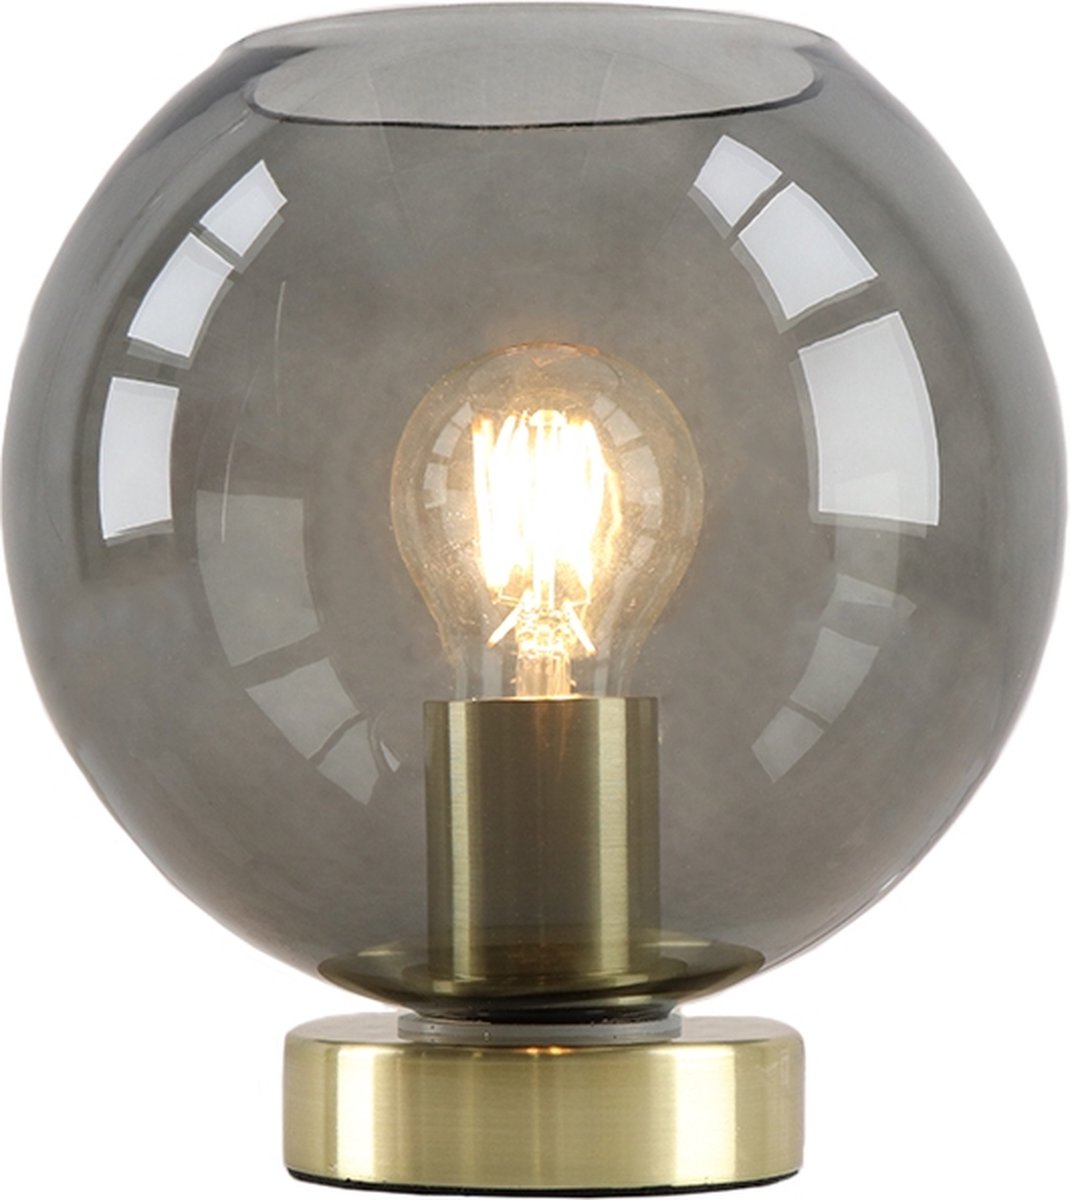 Olucia Maury - Moderne Tafellamp - Glas/Metaal - Goud;Grijs